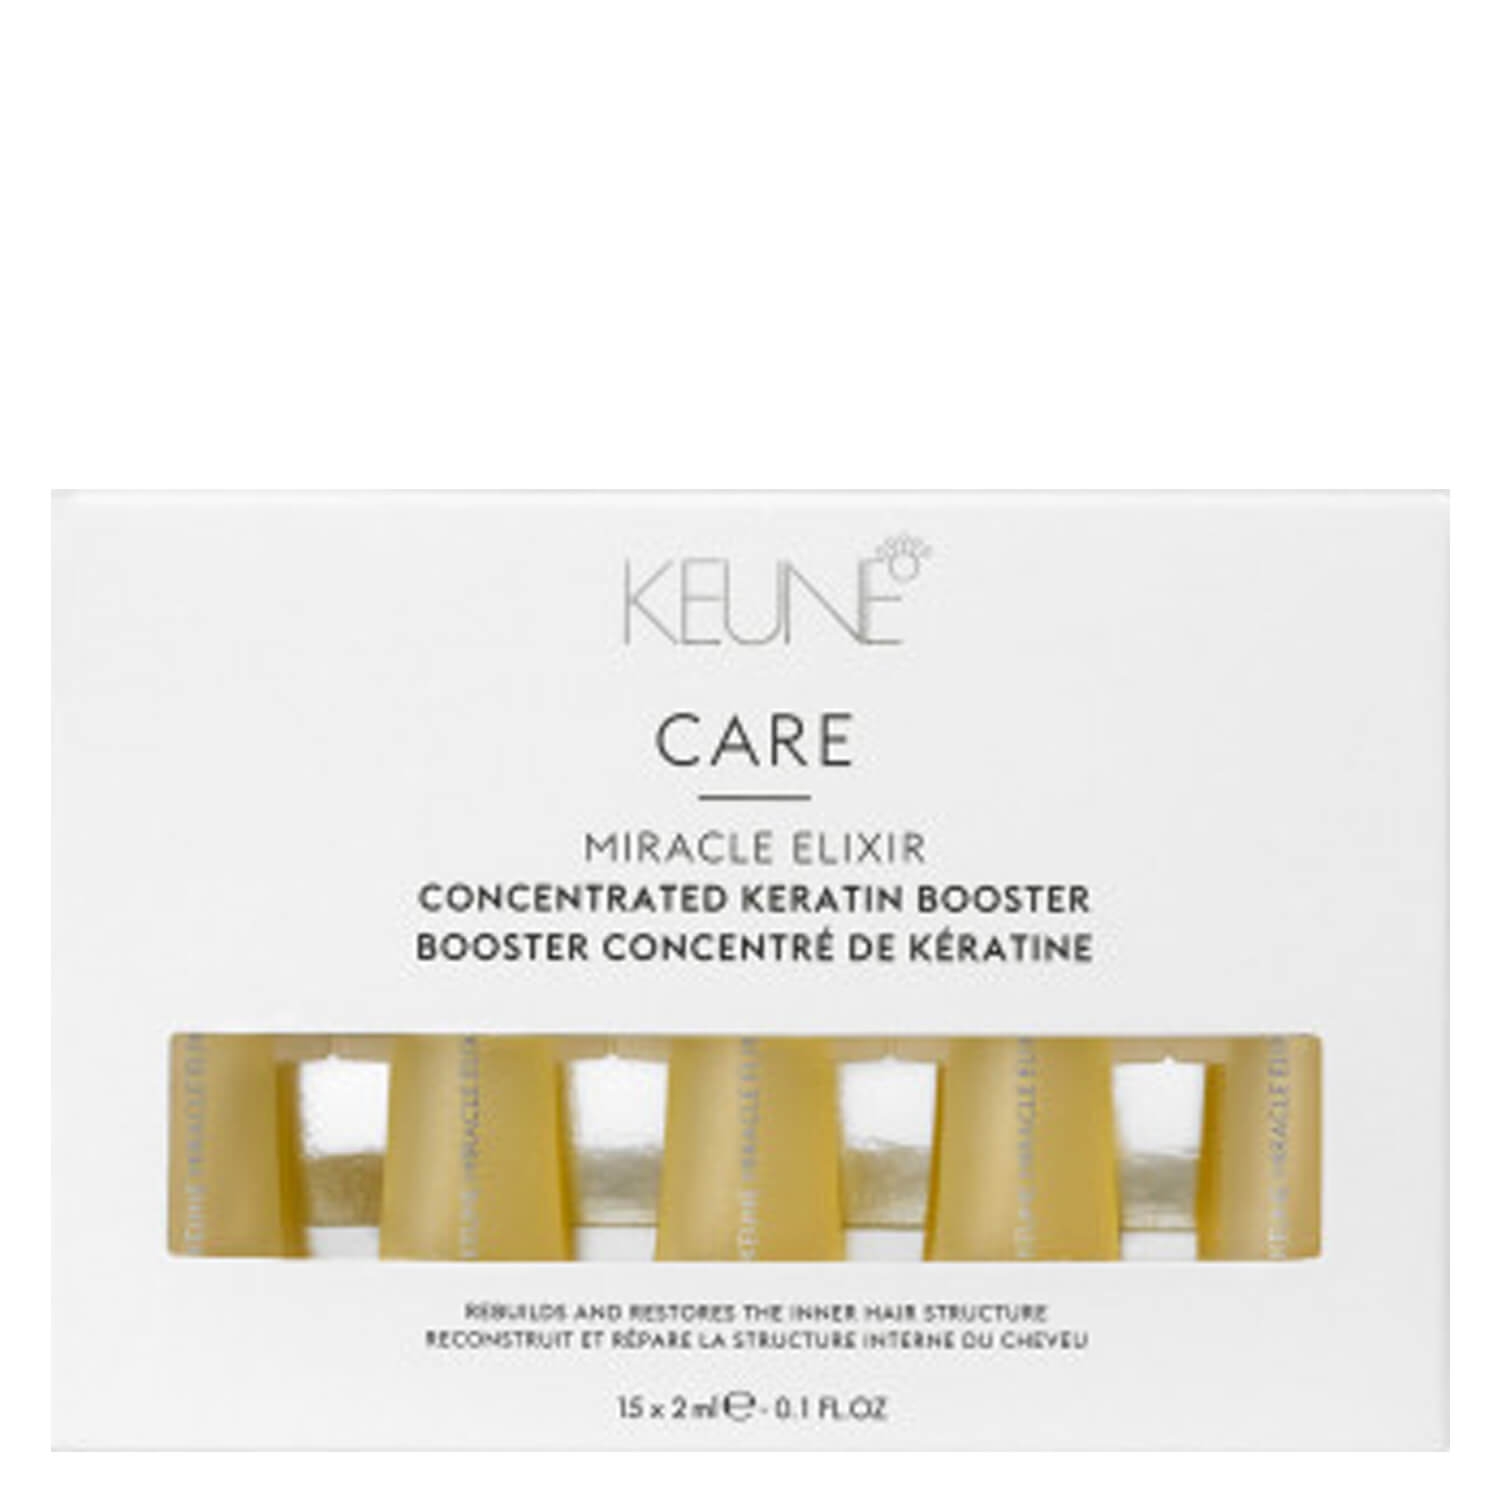 Product image from Keune Care Miracle Elixir Keratin Booster